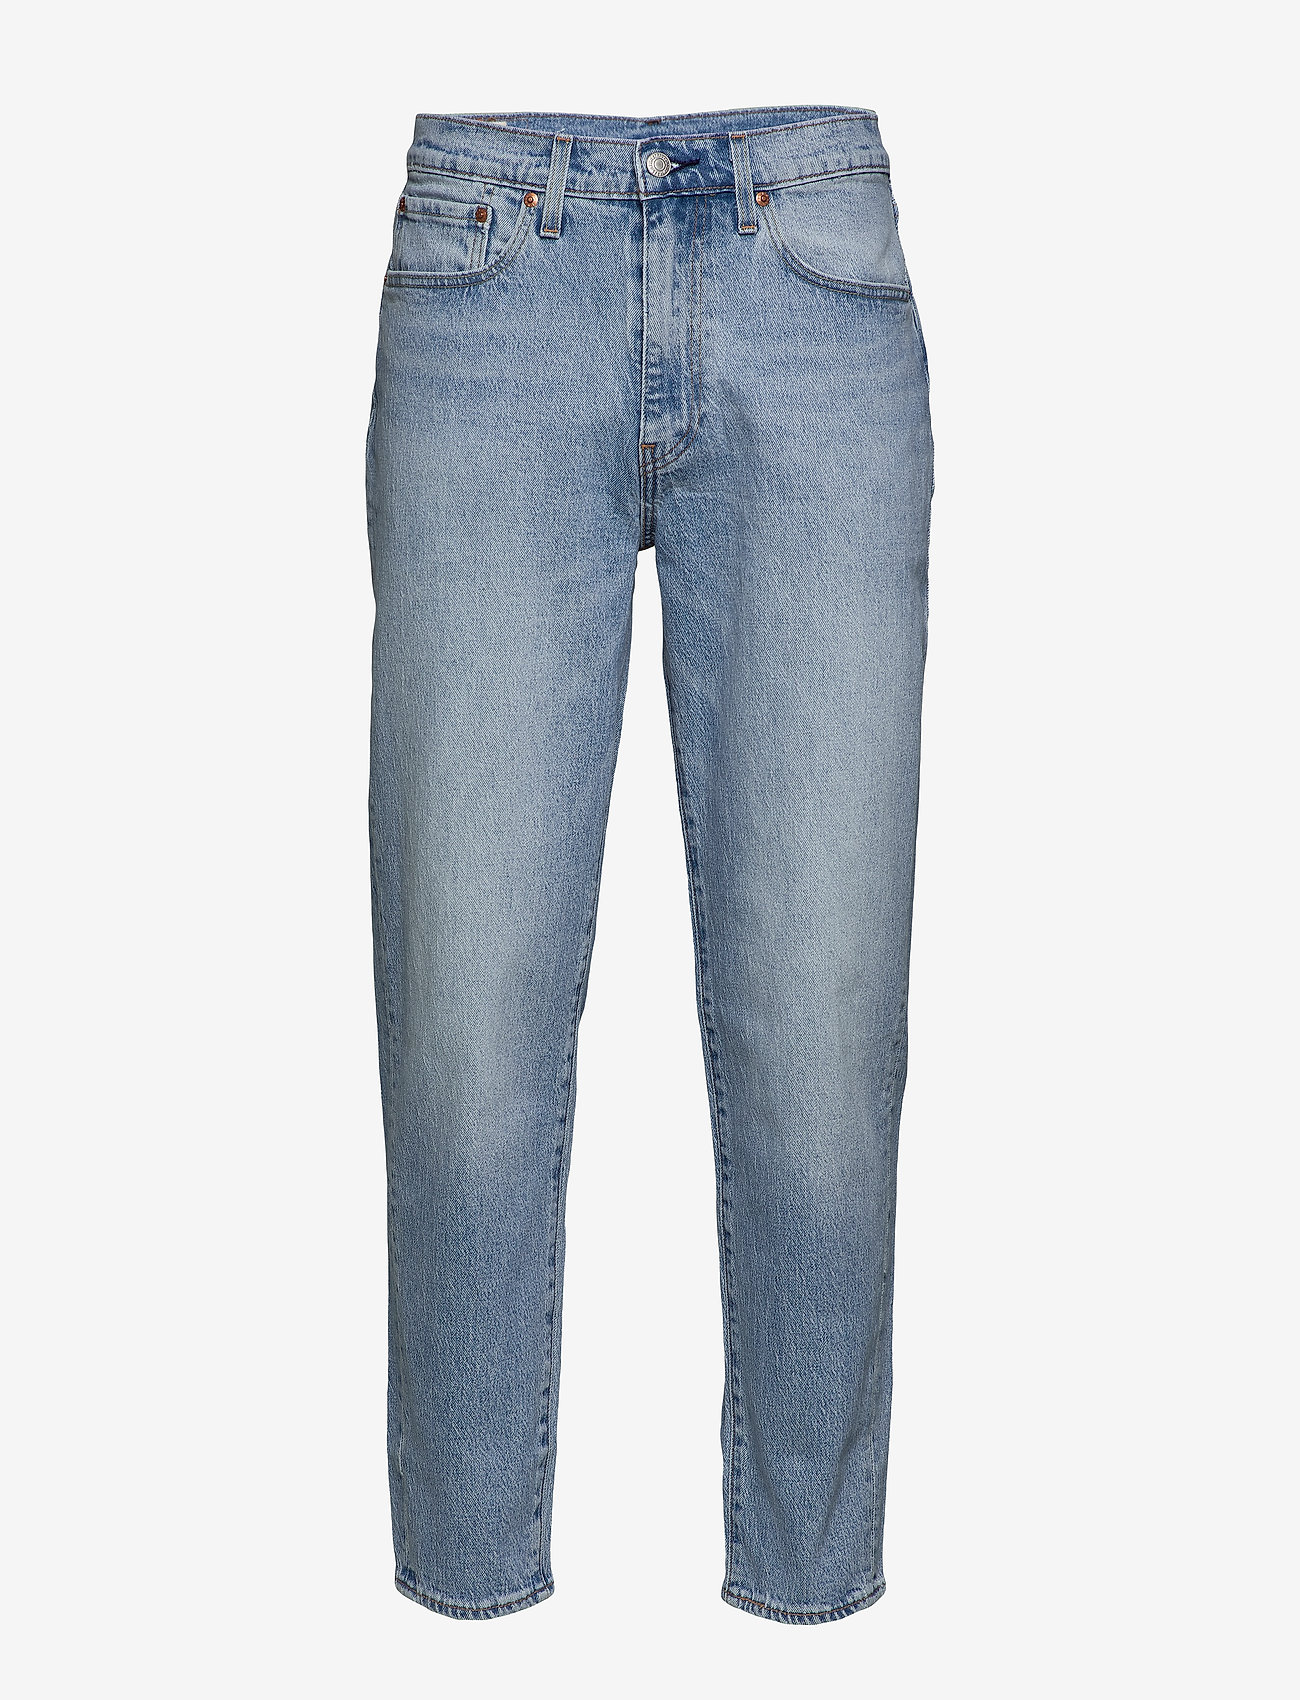 levis 562 jeans